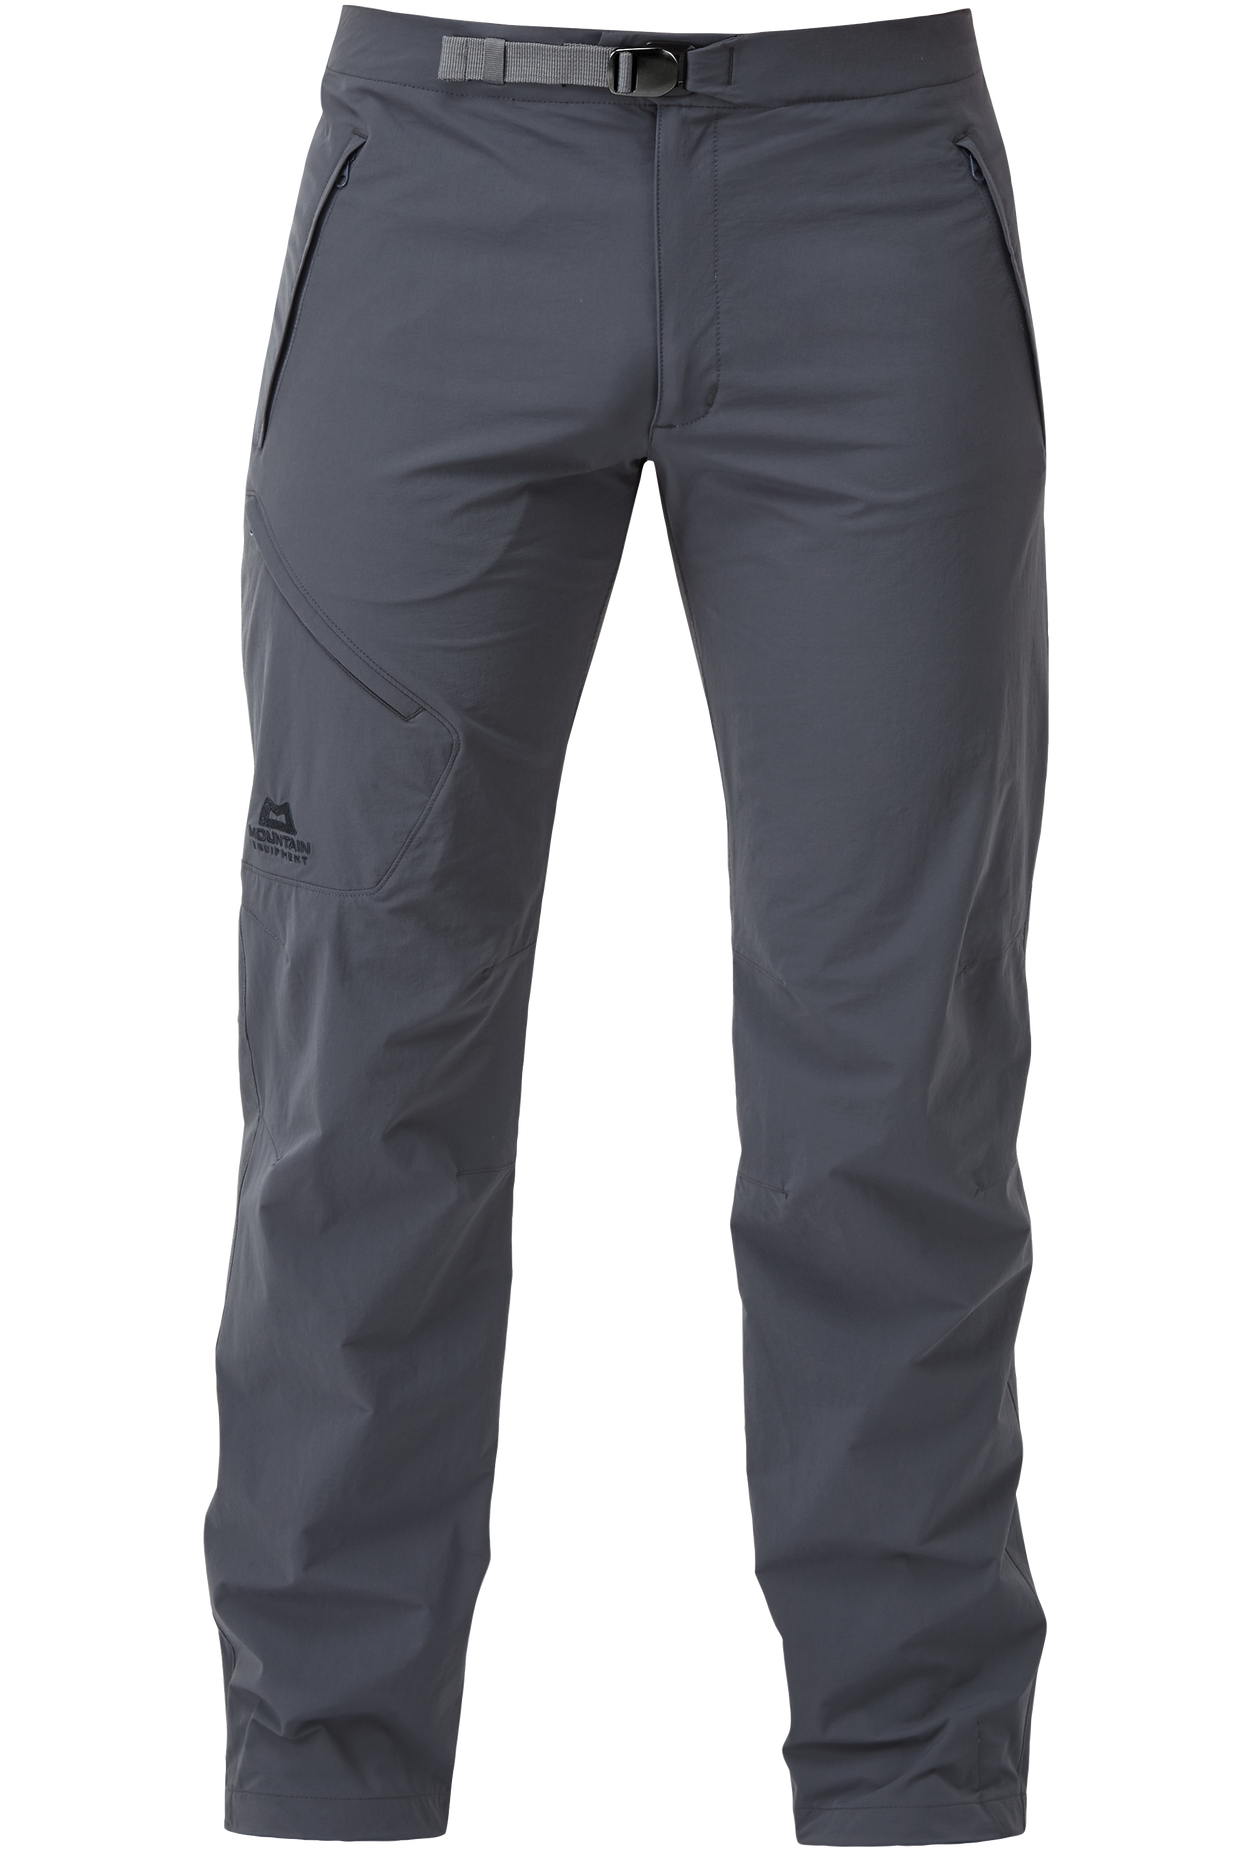 Mountain Equipment pánské softshellové kalhoty Comici Pant - prodloužené Barva: Ombre Blue, Velikost: 36/XL